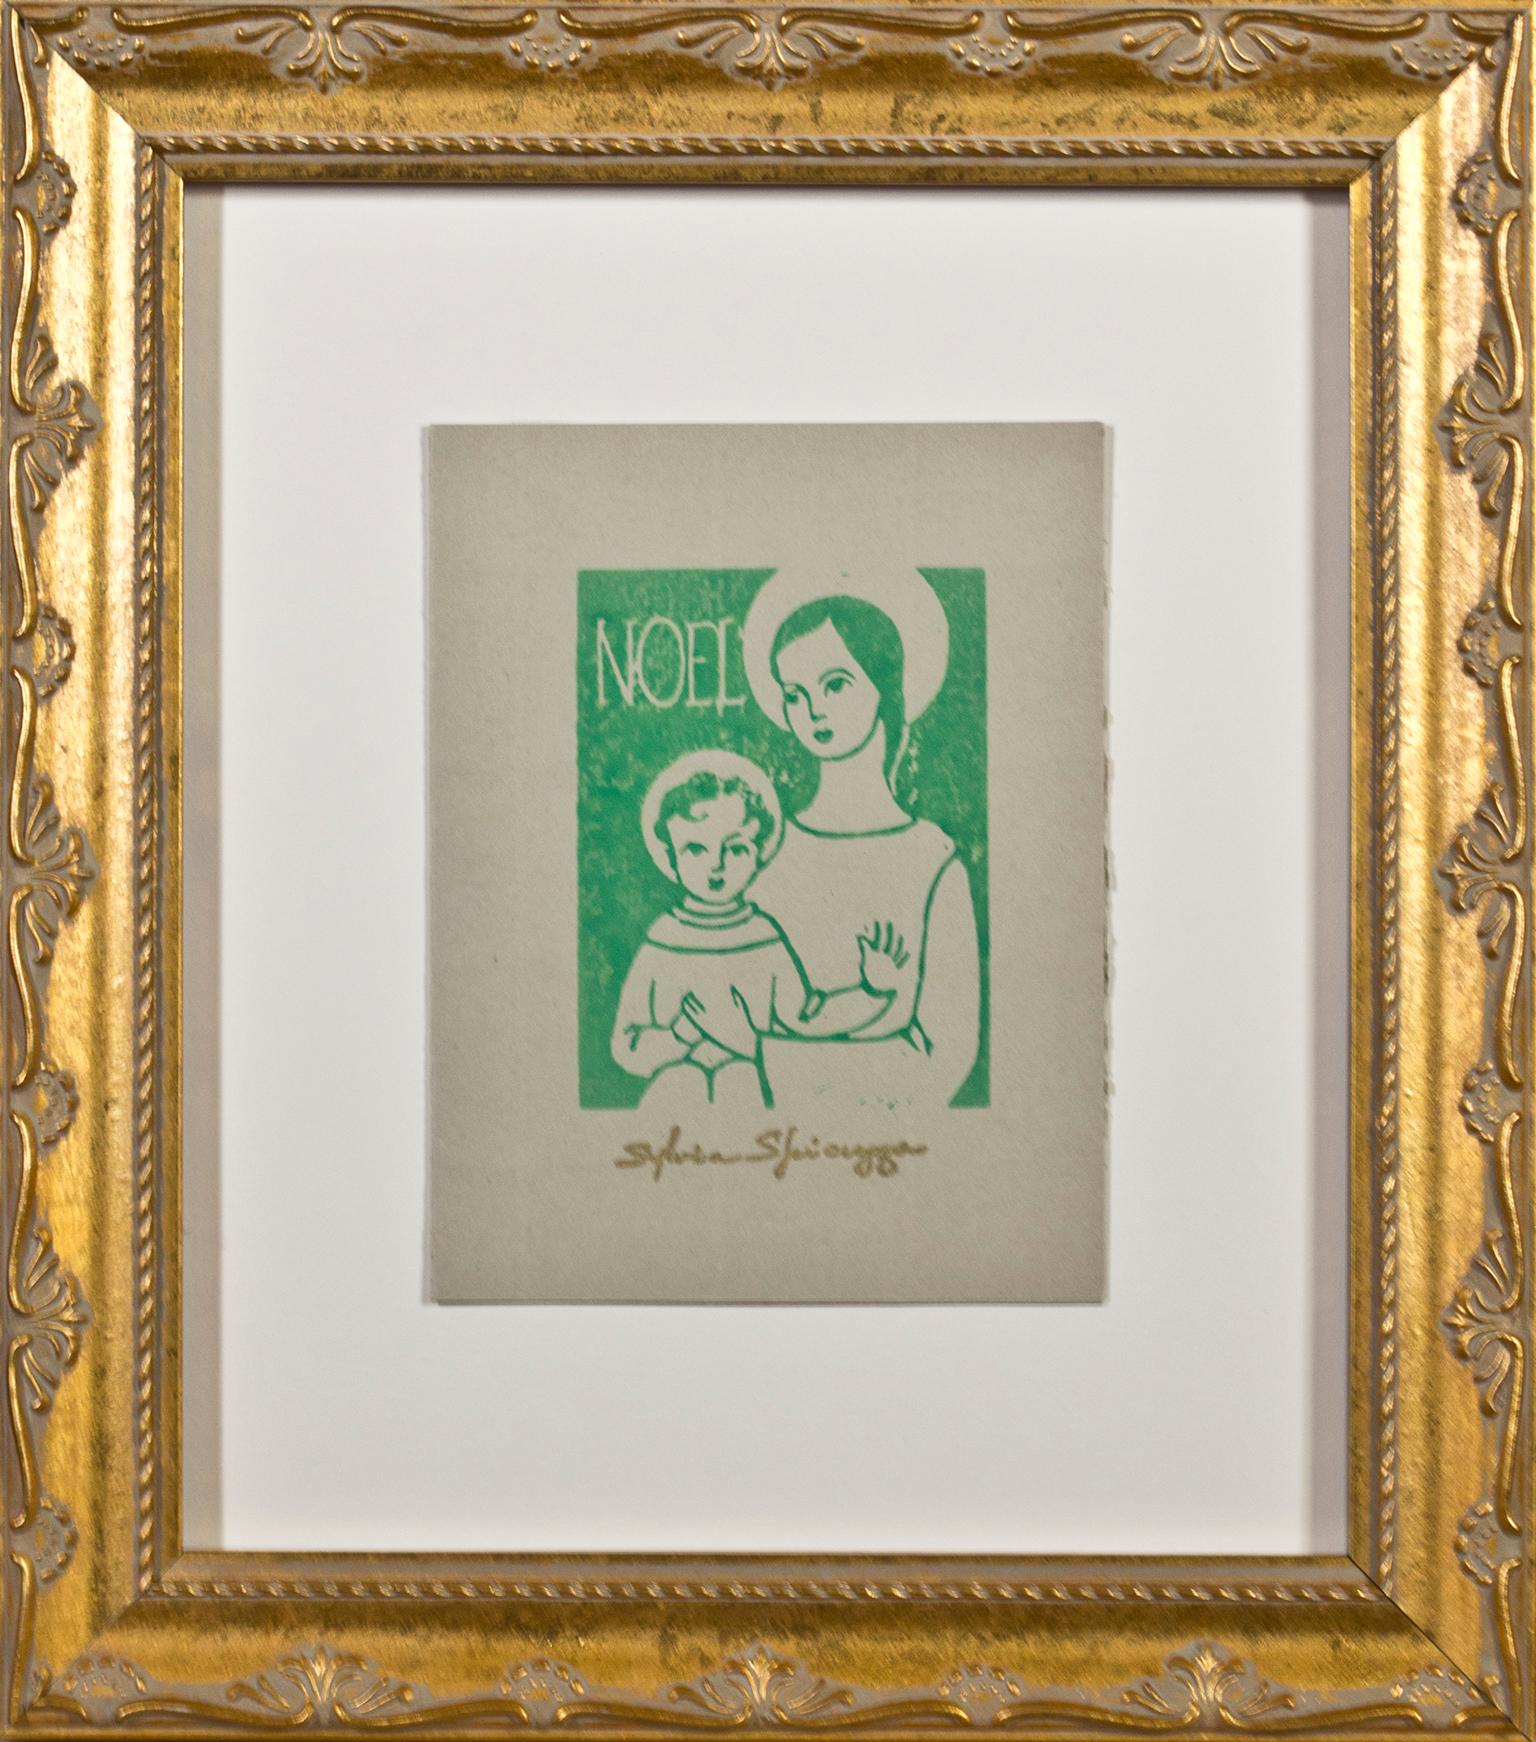 "Noel" ist ein Original-Linolschnitt in grüner Tinte auf hellbraunem Papier von Sylvia Spicuzza. Die Künstlerin hat ihre Signatur unten in der Mitte aufgestempelt. Dieses Kunstwerk zeigt die Jungfrau Maria, die das Jesuskind hält. Beide Zahlen sind